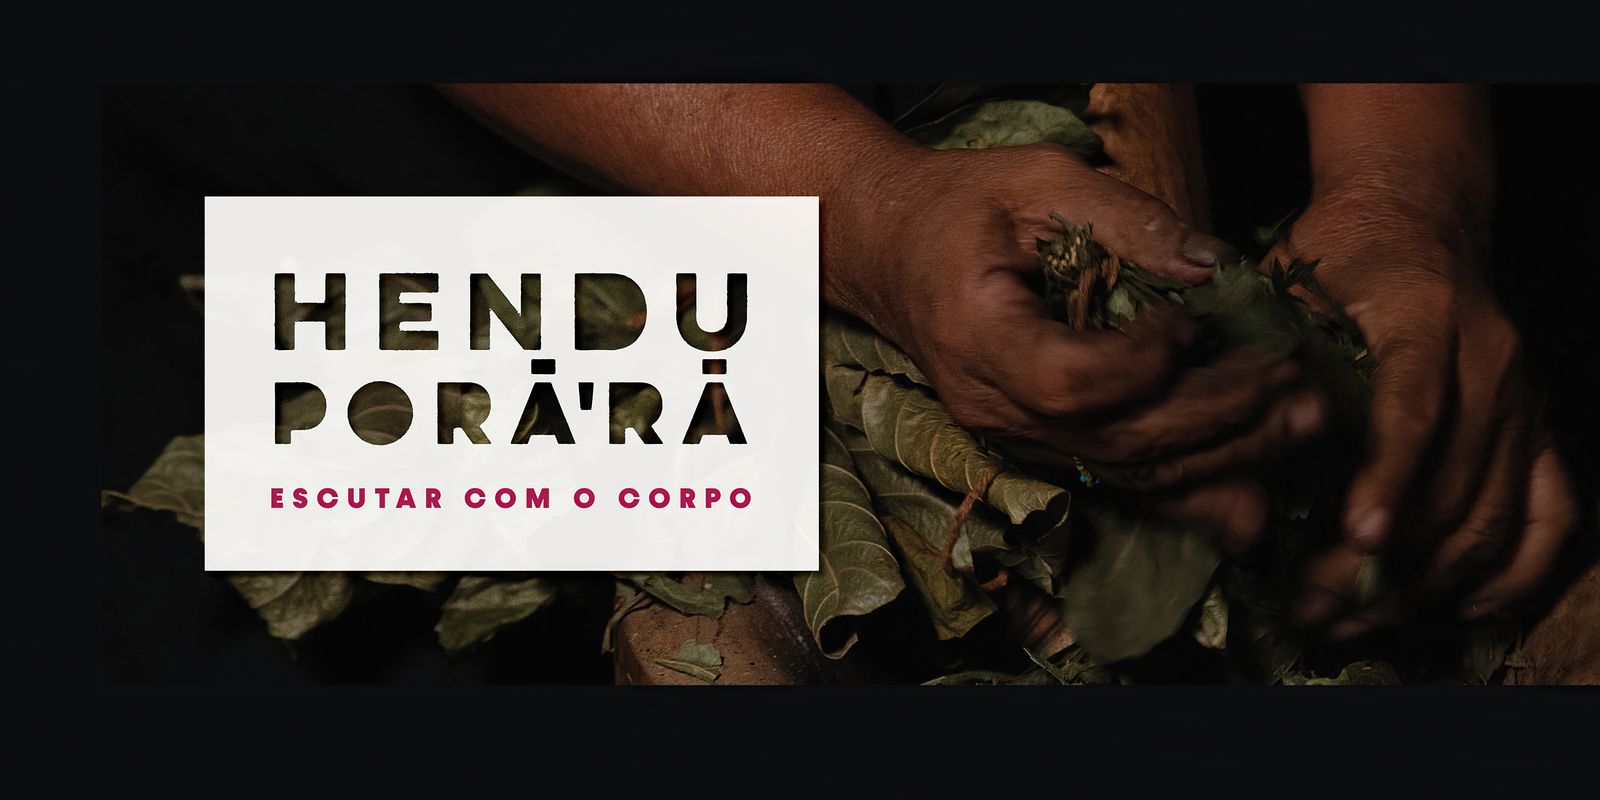 exposicao-em-sao-paulo-retrata-modo-de-vida-e-cultura-dos-guarani